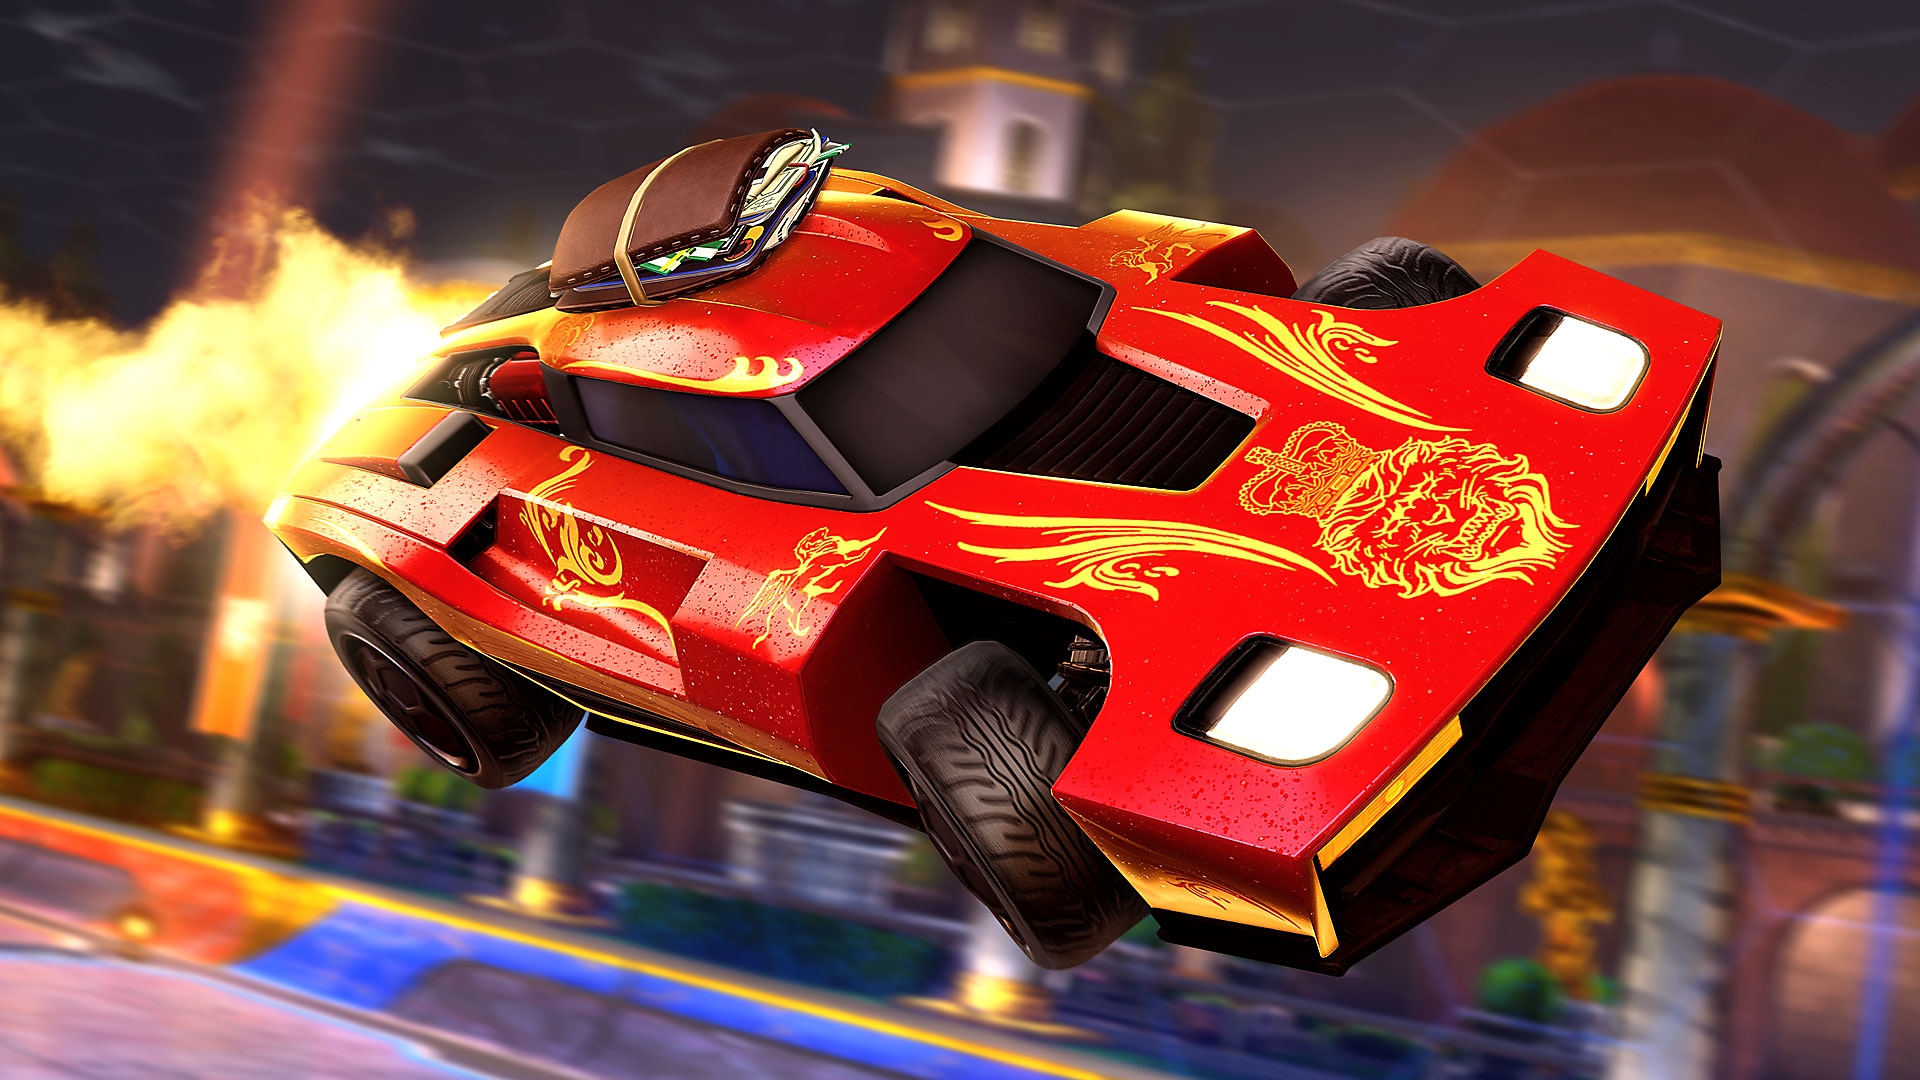 《Rocket League》螢幕截圖，顯示後方有火焰的紅色跑車